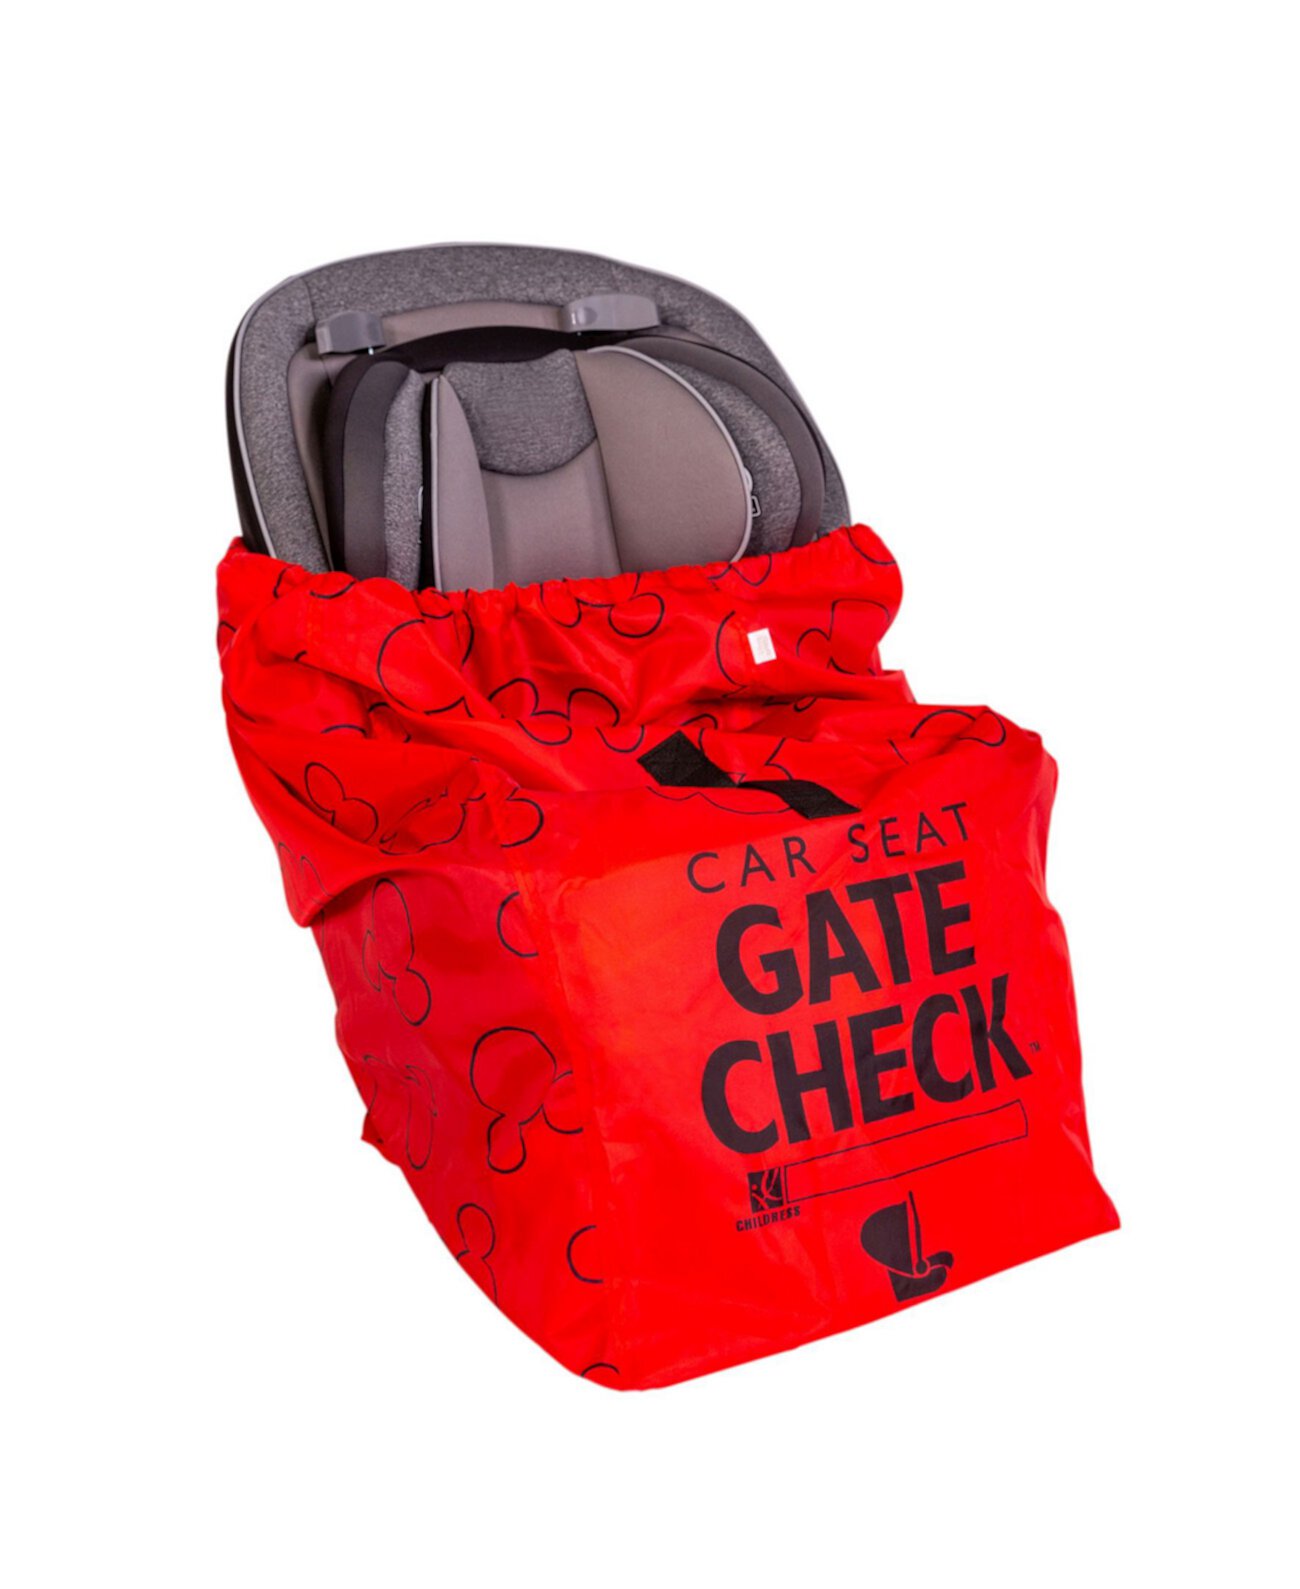 Дорожная сумка Disney Baby Gate Check для автомобильных сидений J L childress